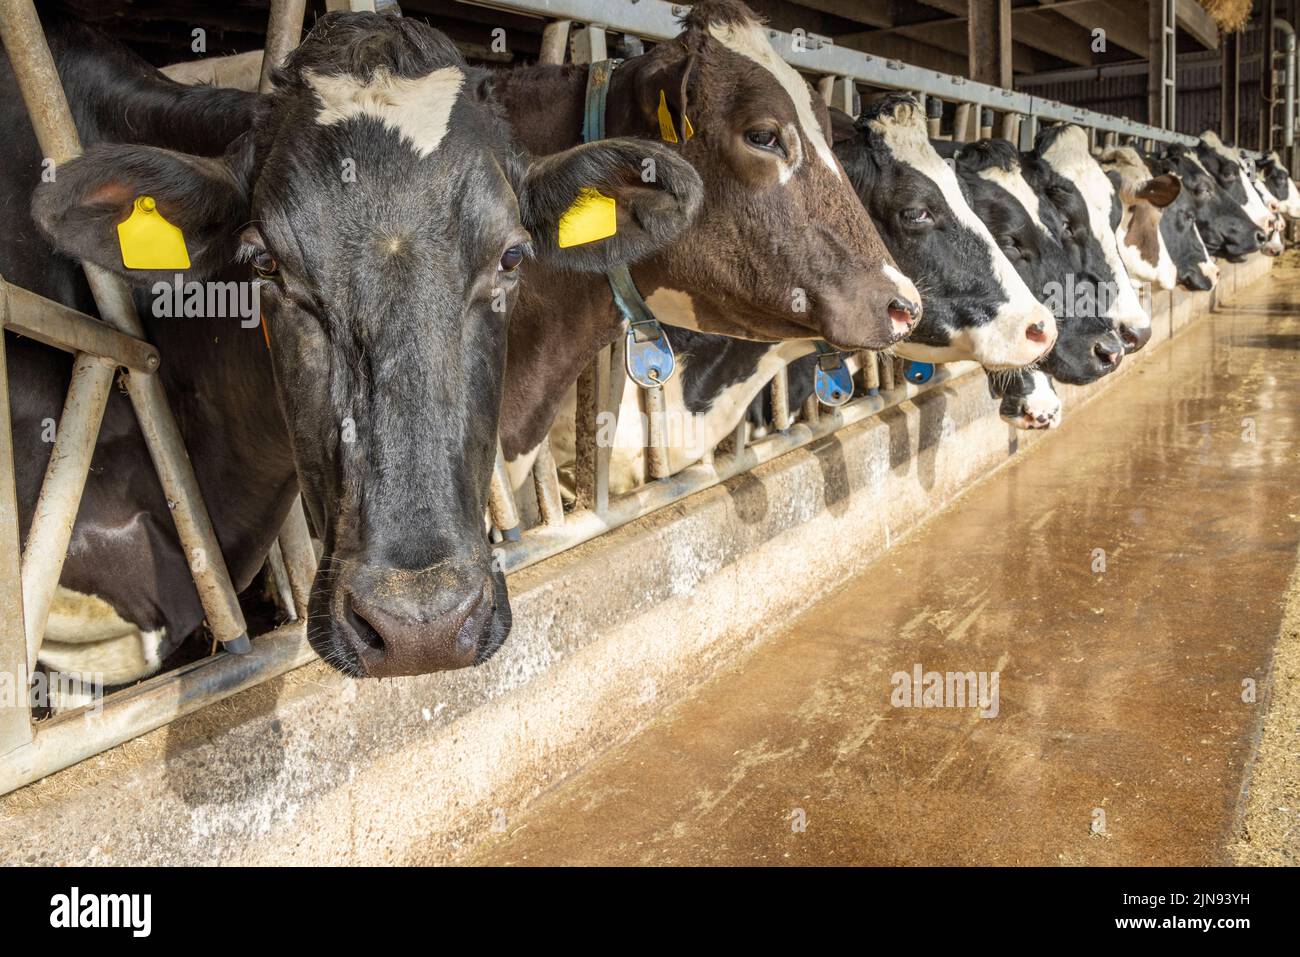 La vache se dirige dans une grange dans une rangée en attendant le temps de nourrir, piquant à travers les barres dans une grange, tête entre les poteaux de la clôture Banque D'Images